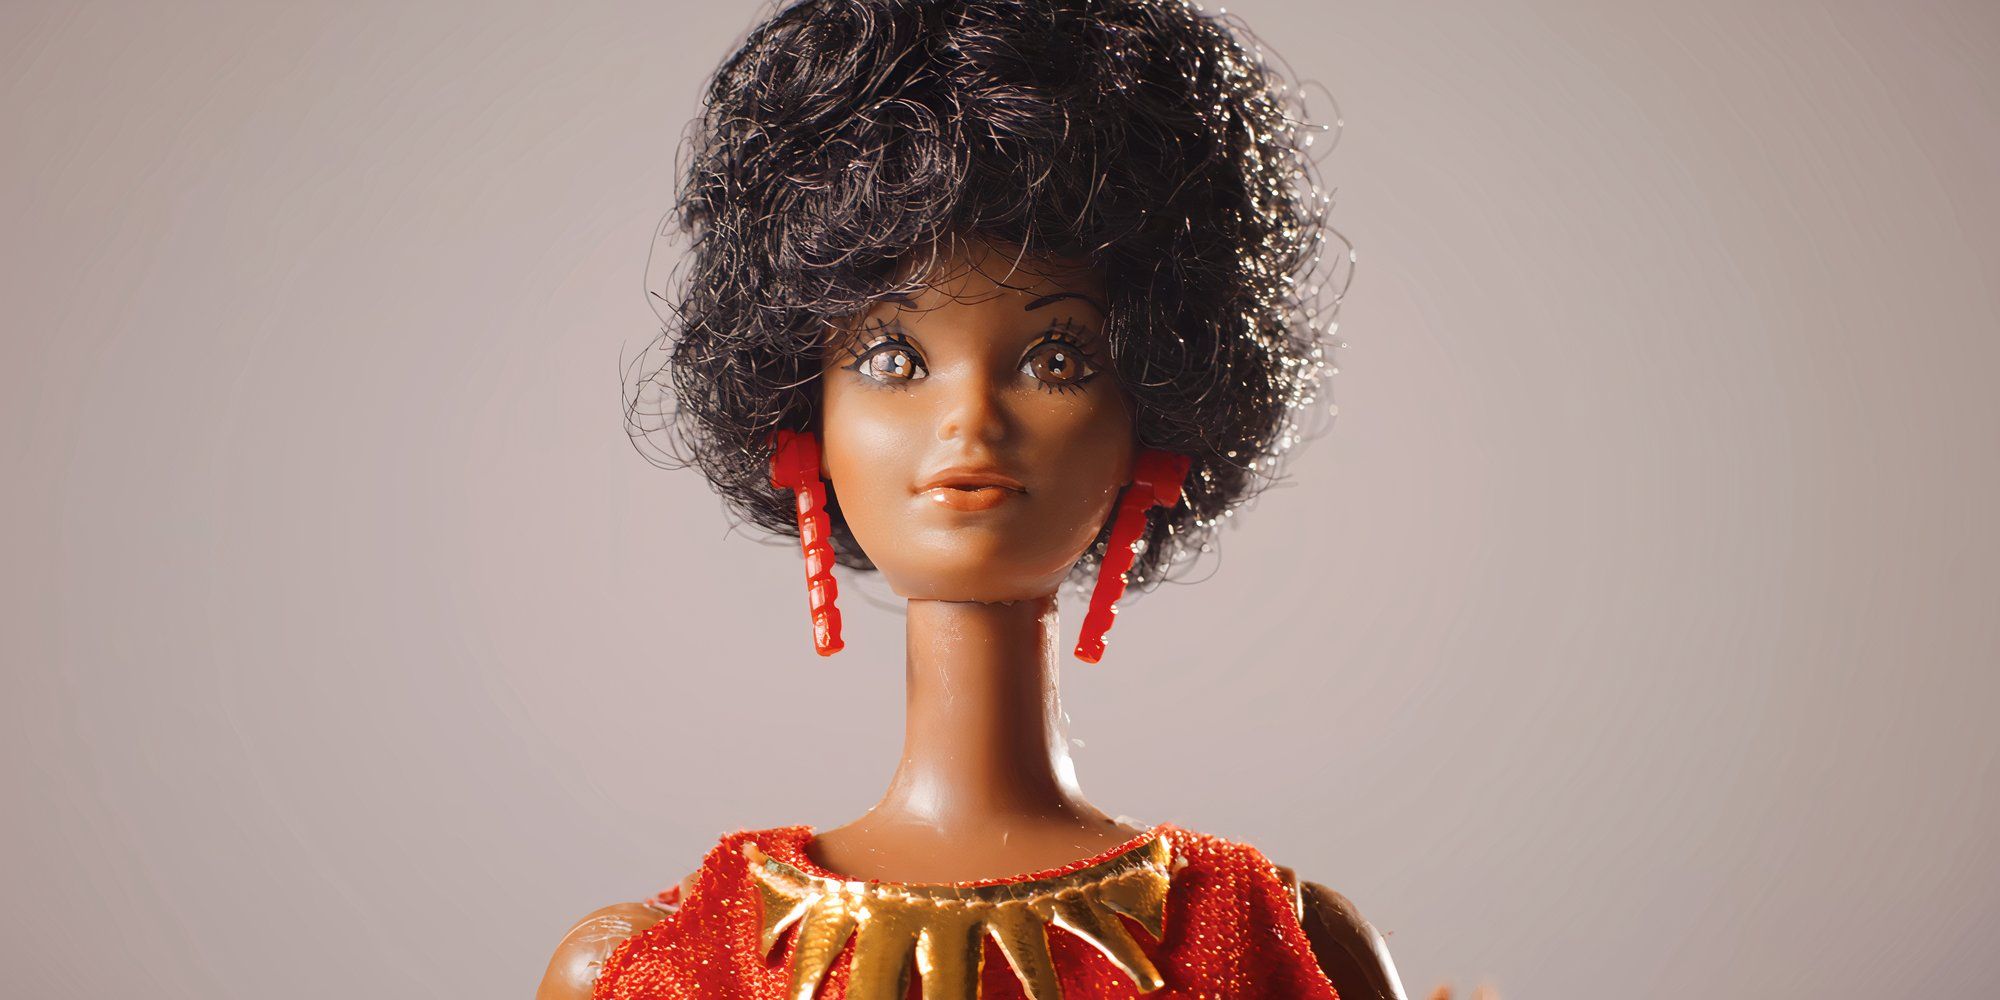 The original Black Barbie from Black Barbie A Documentary